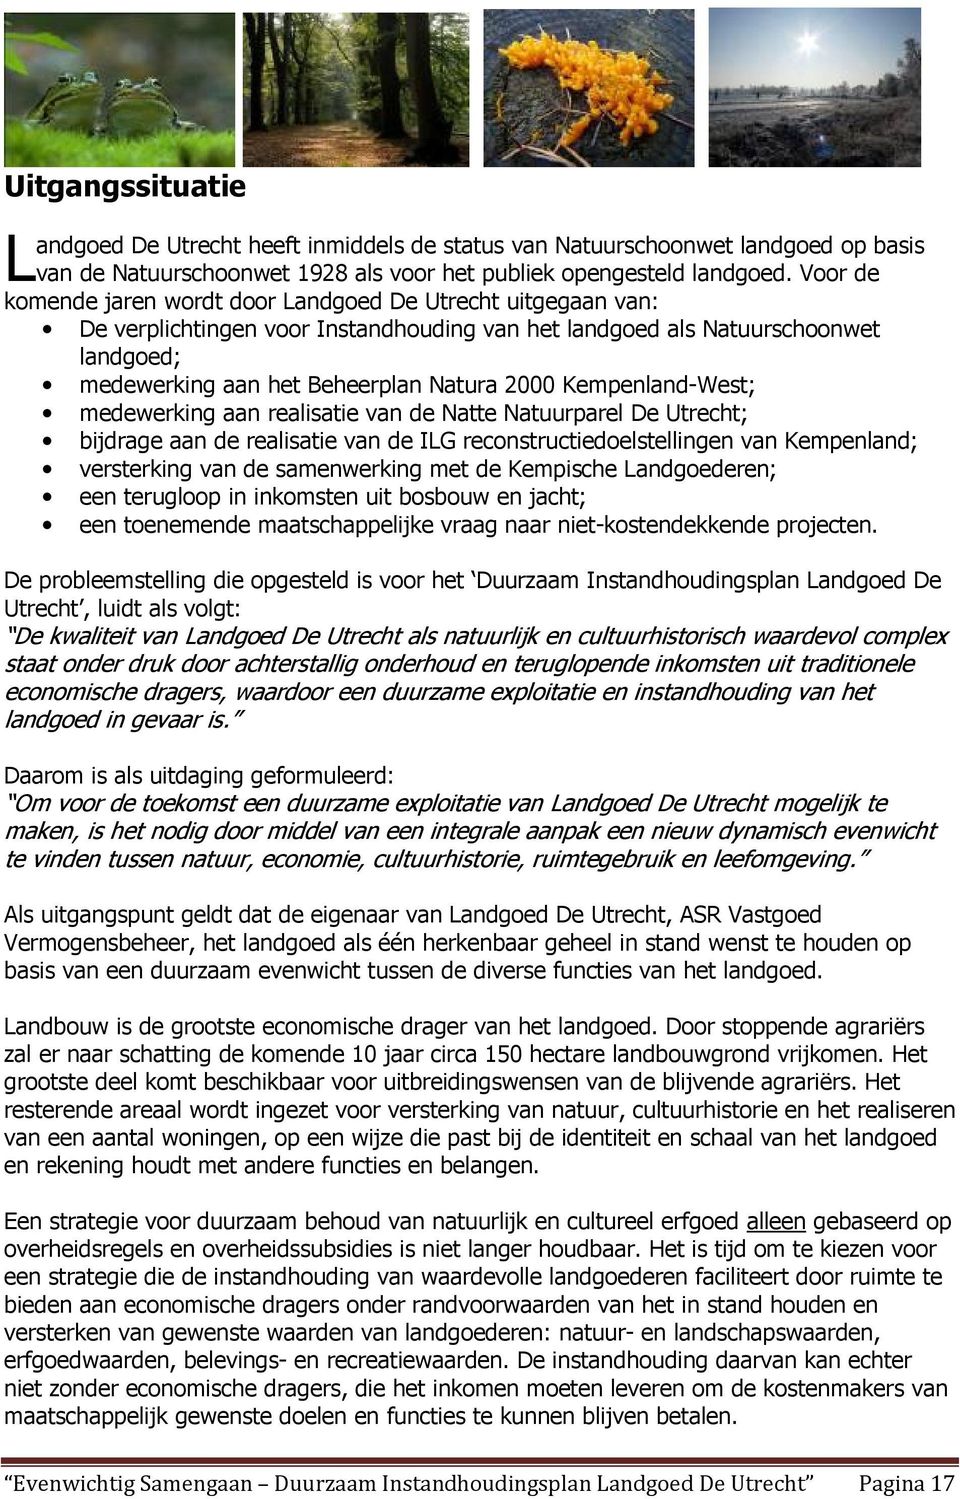 Kempenland-West; medewerking aan realisatie van de Natte Natuurparel De Utrecht; bijdrage aan de realisatie van de ILG reconstructiedoelstellingen van Kempenland; versterking van de samenwerking met